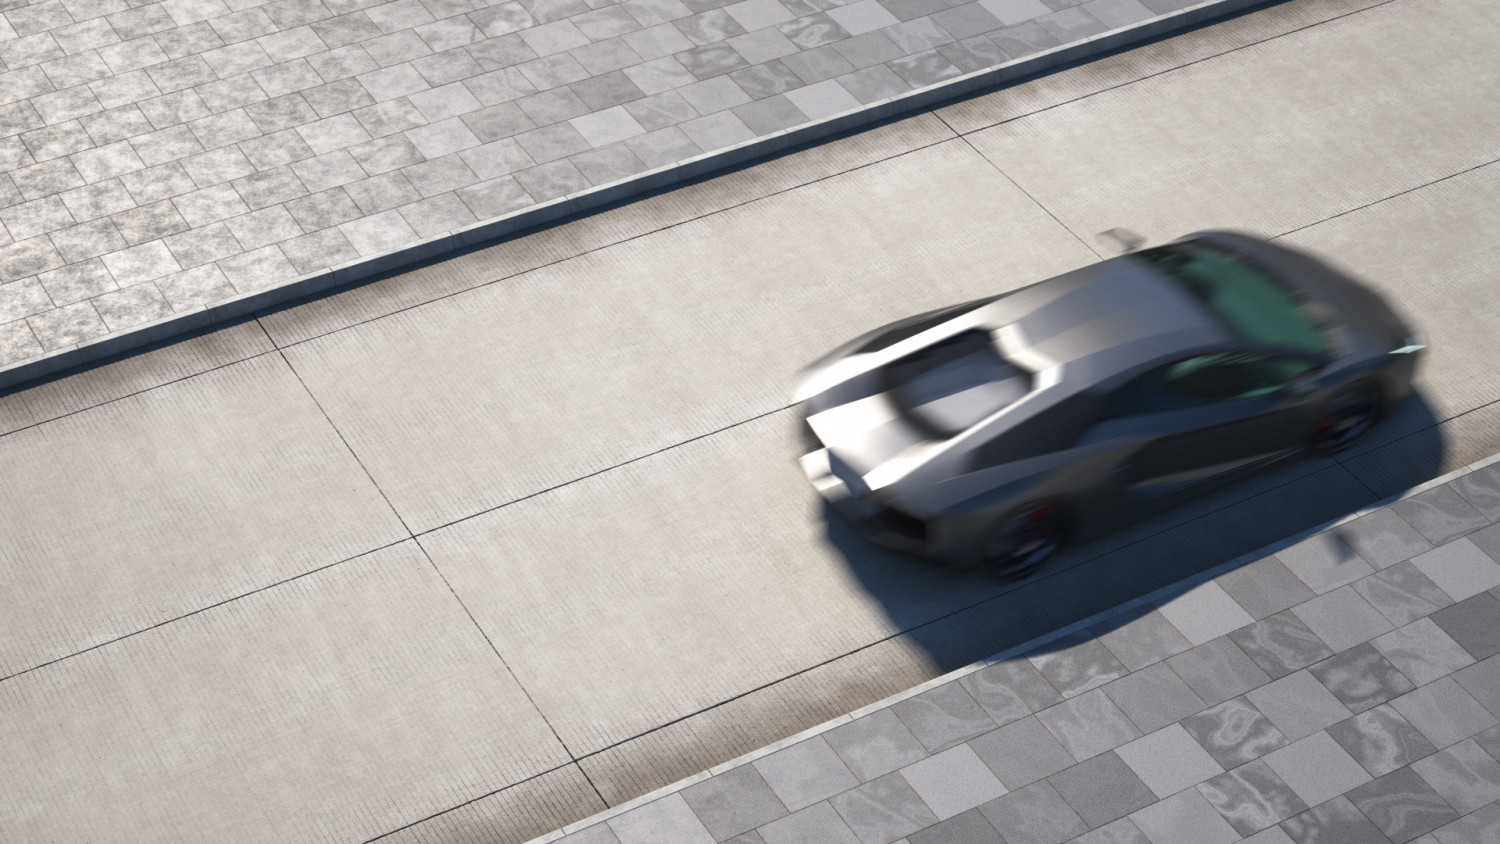 Concrete road texture